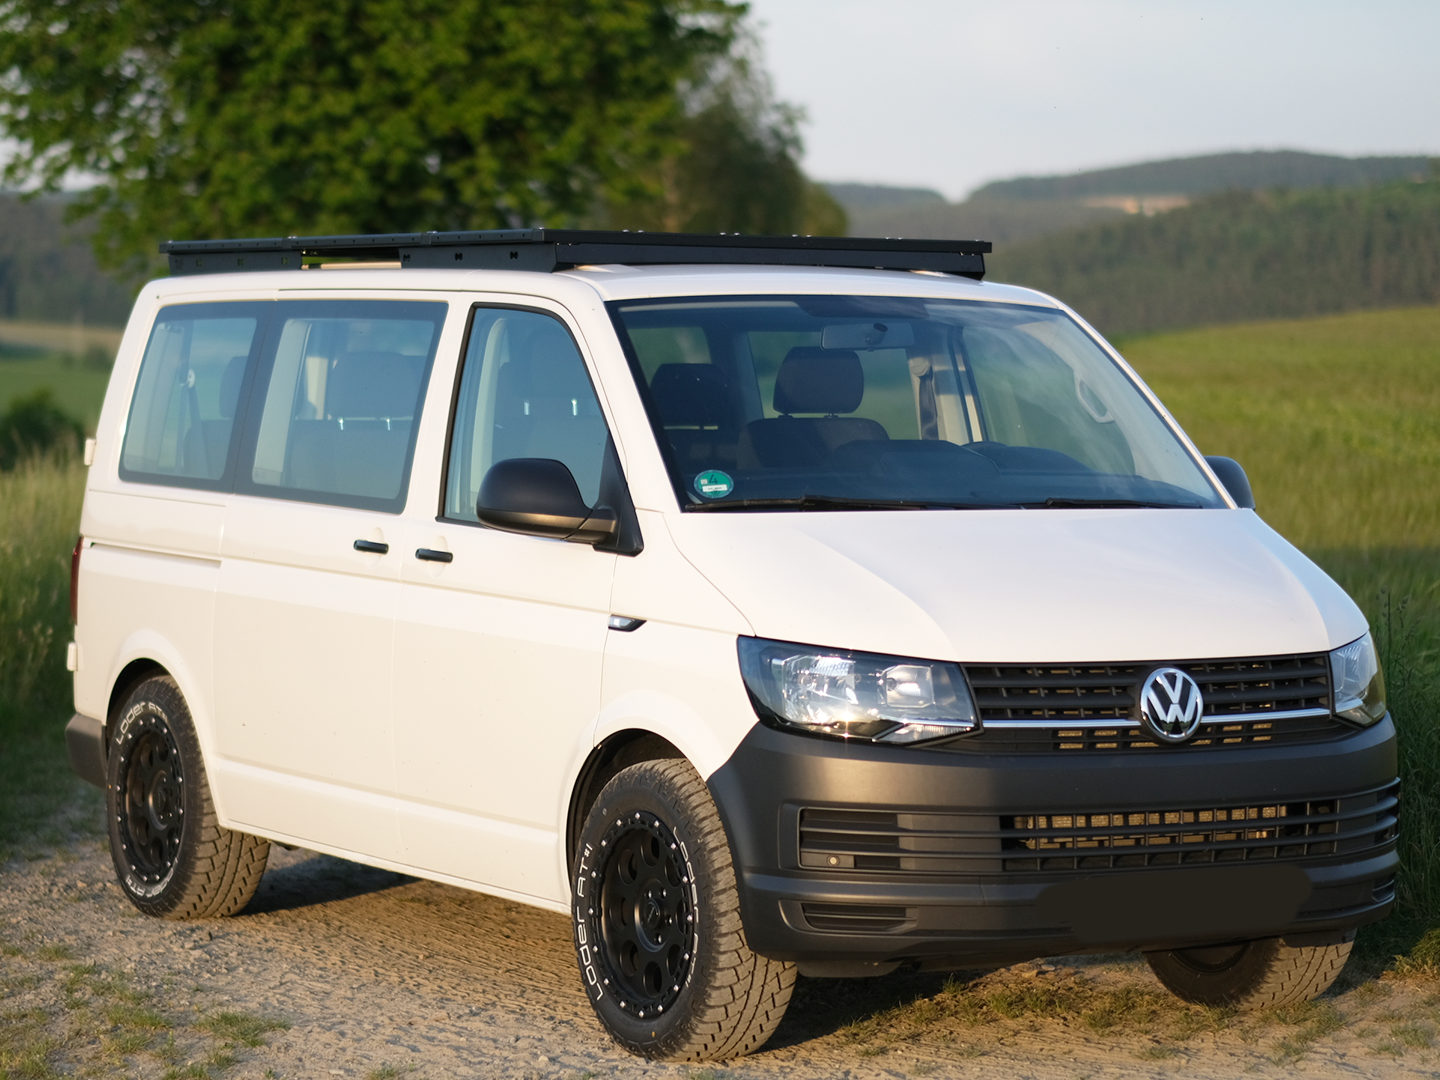 4x Verzurröse Halterung Befestigung Transportsicherung Für VW T5